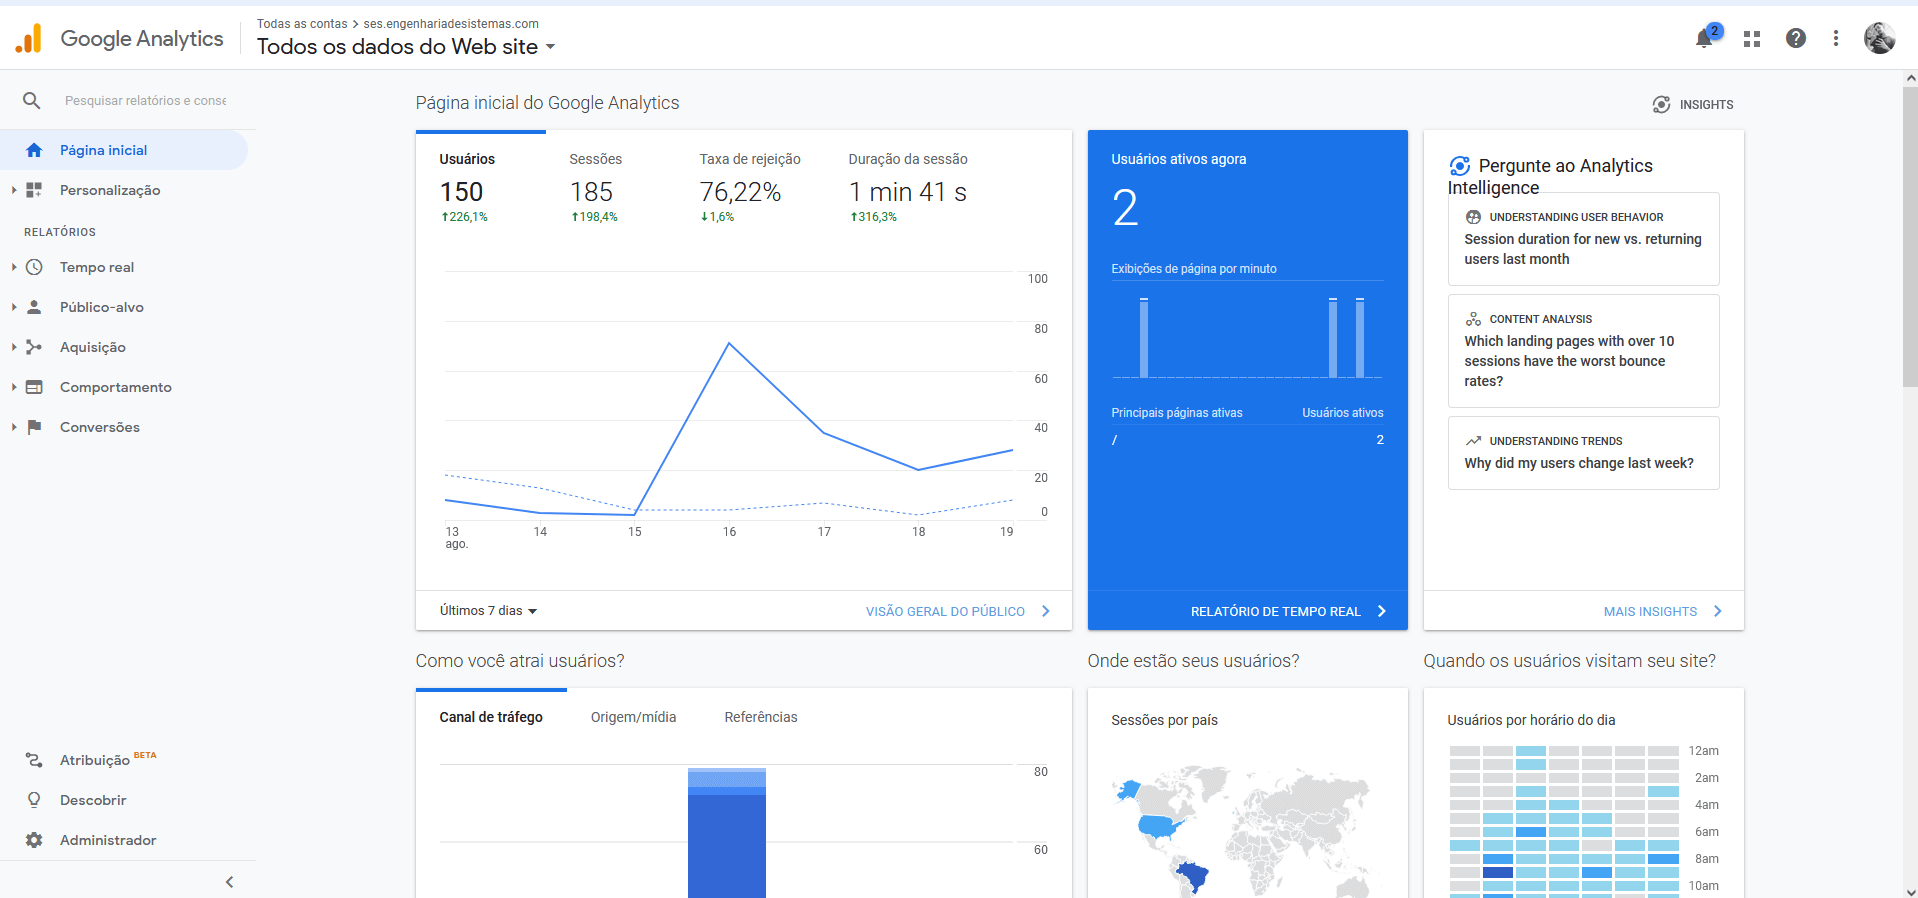 Google Analytics - Servidores Gerenciados